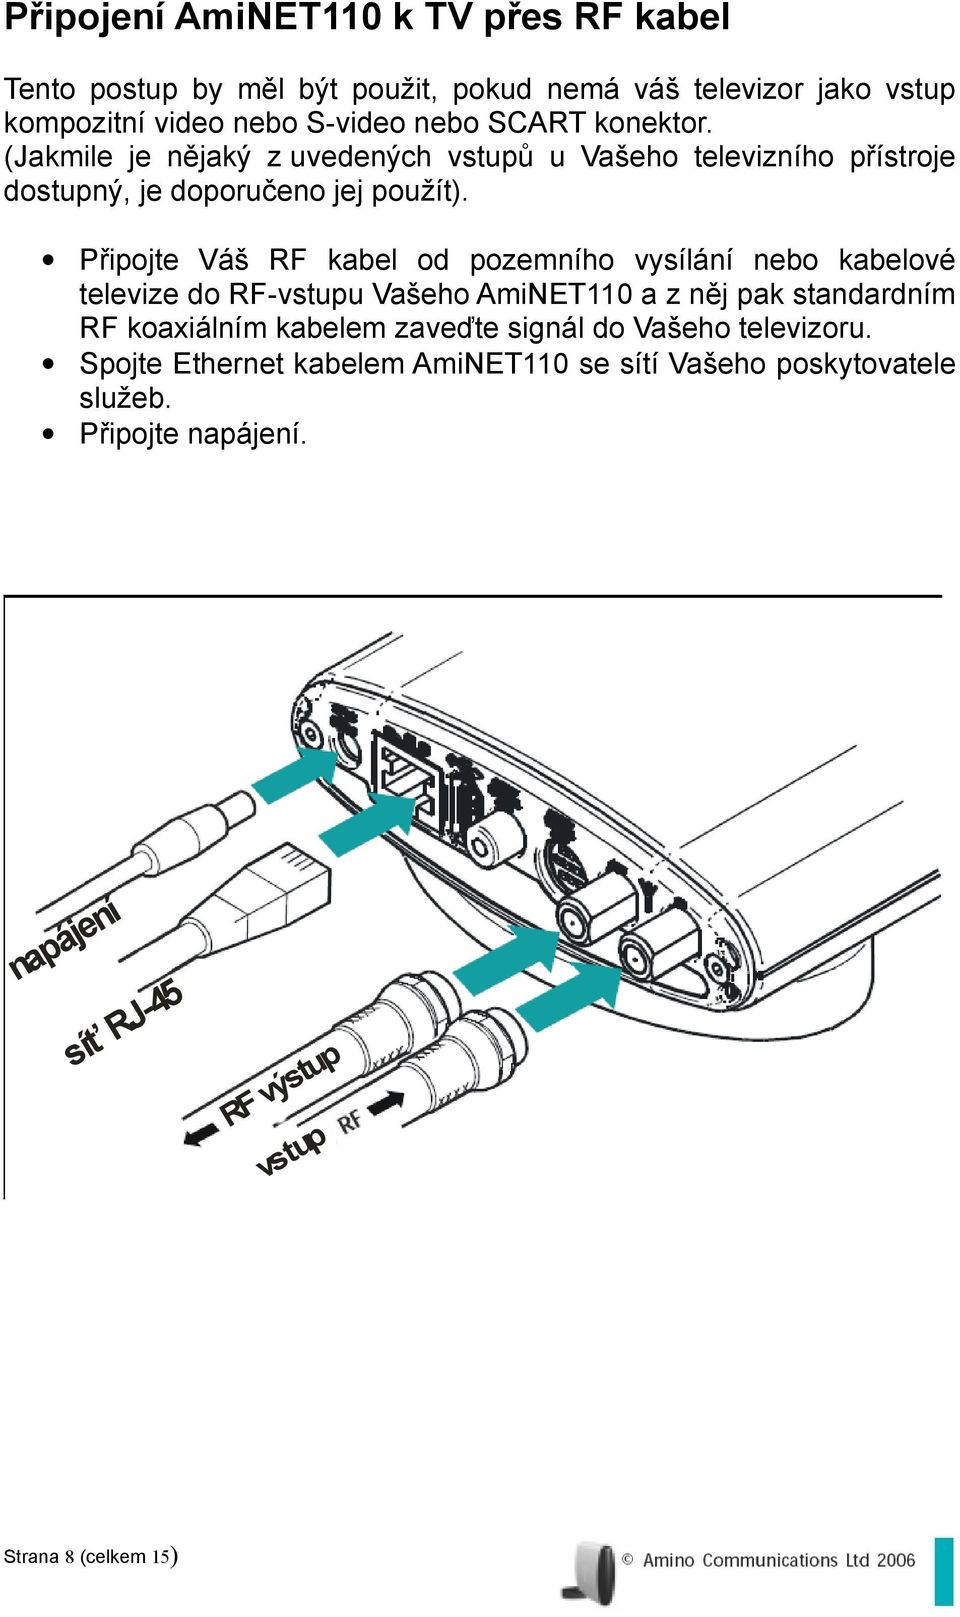 Připojte Váš RF kabel od pozemního vysílání nebo kabelové televize do RF-vstupu Vašeho AmiNET110 a z něj pak standardním RF koaxiálním kabelem